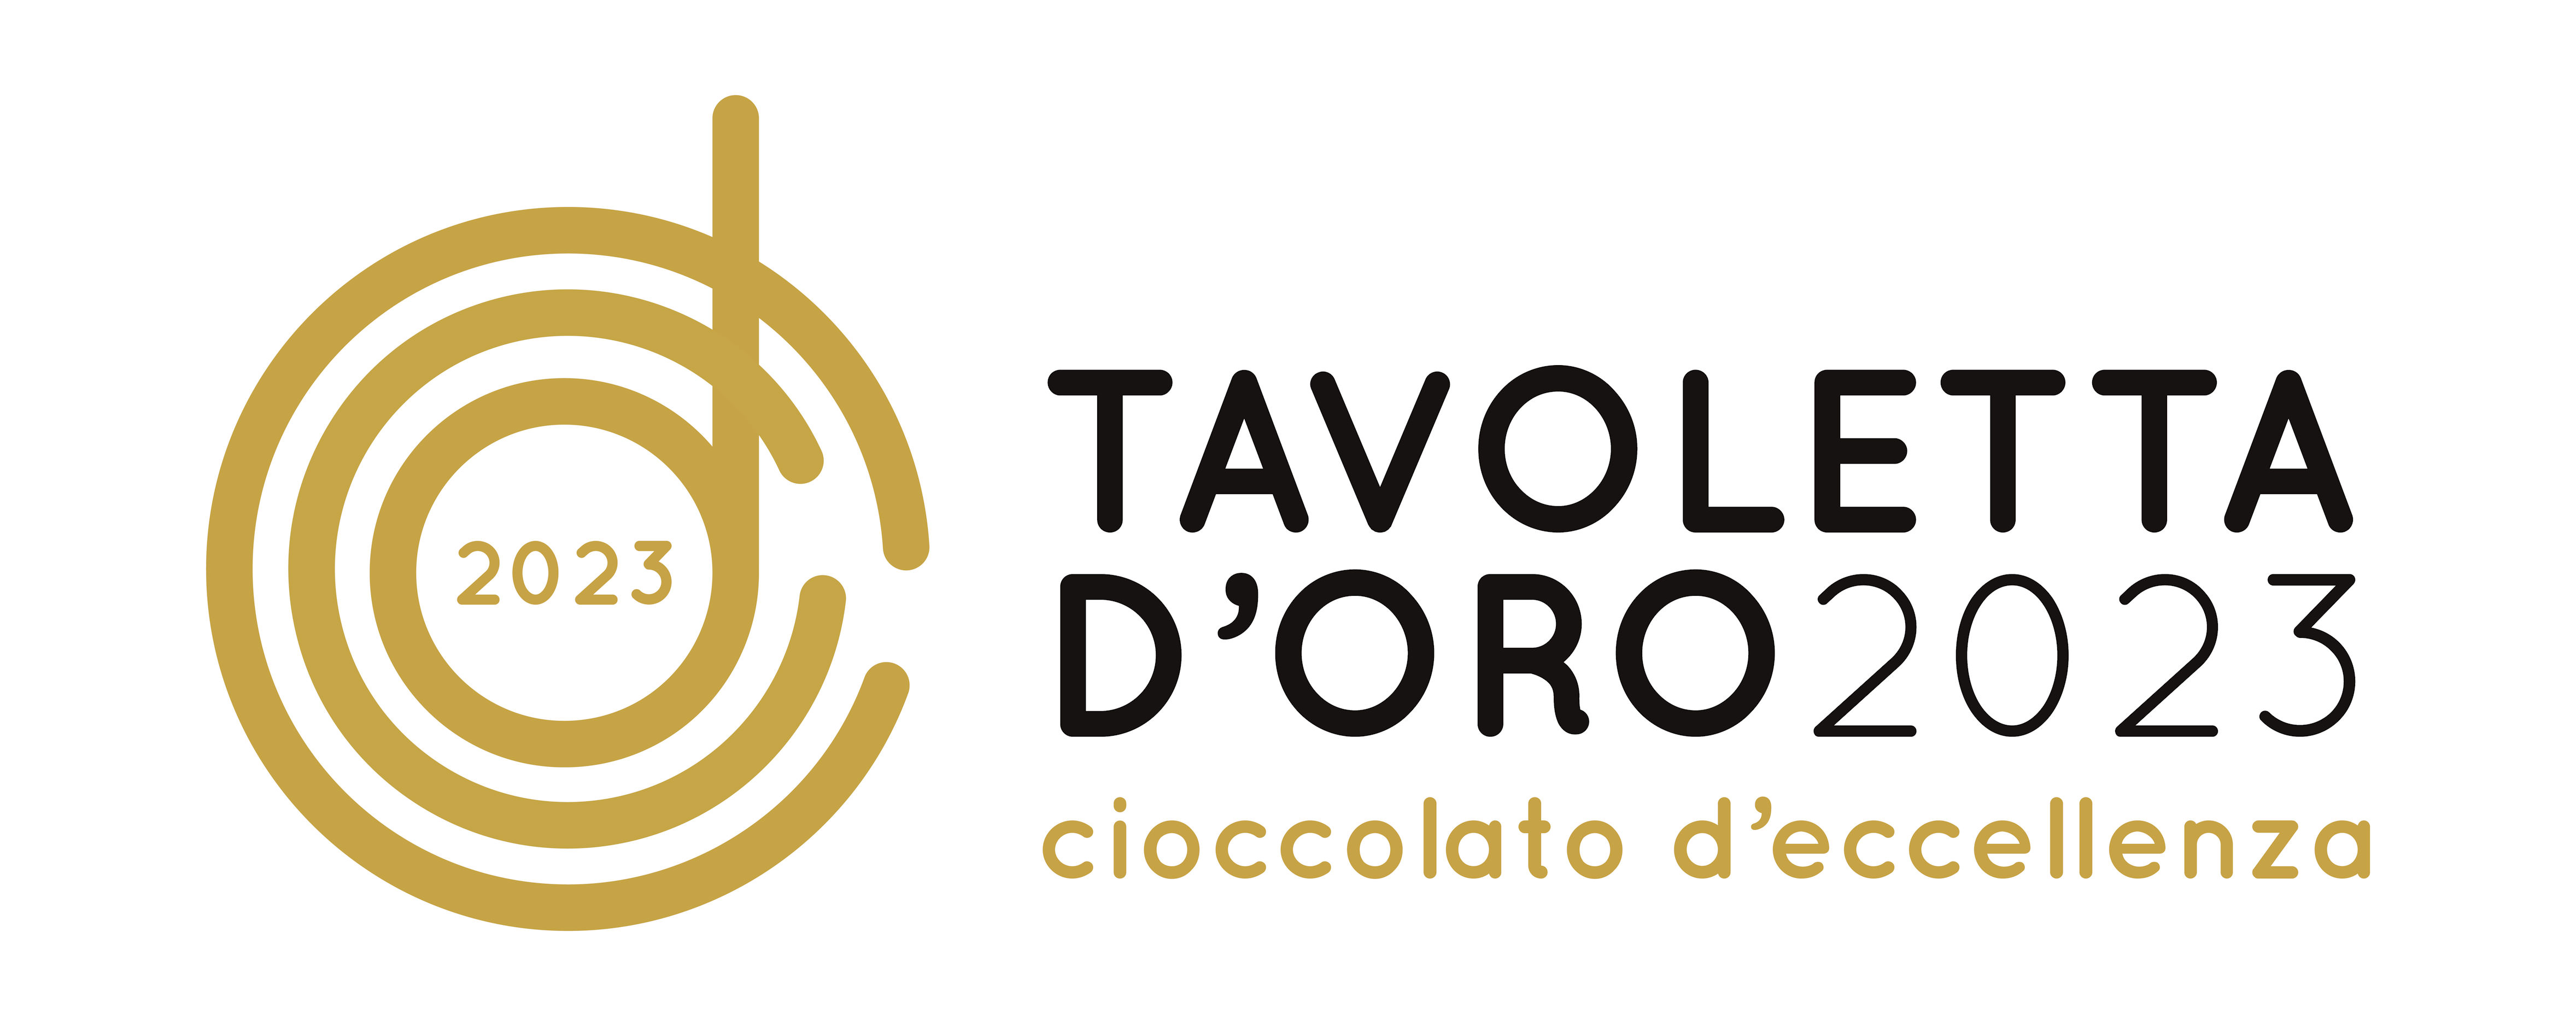 TAVOLETTA D'ORO 2023 cioccolato d'eccellenza